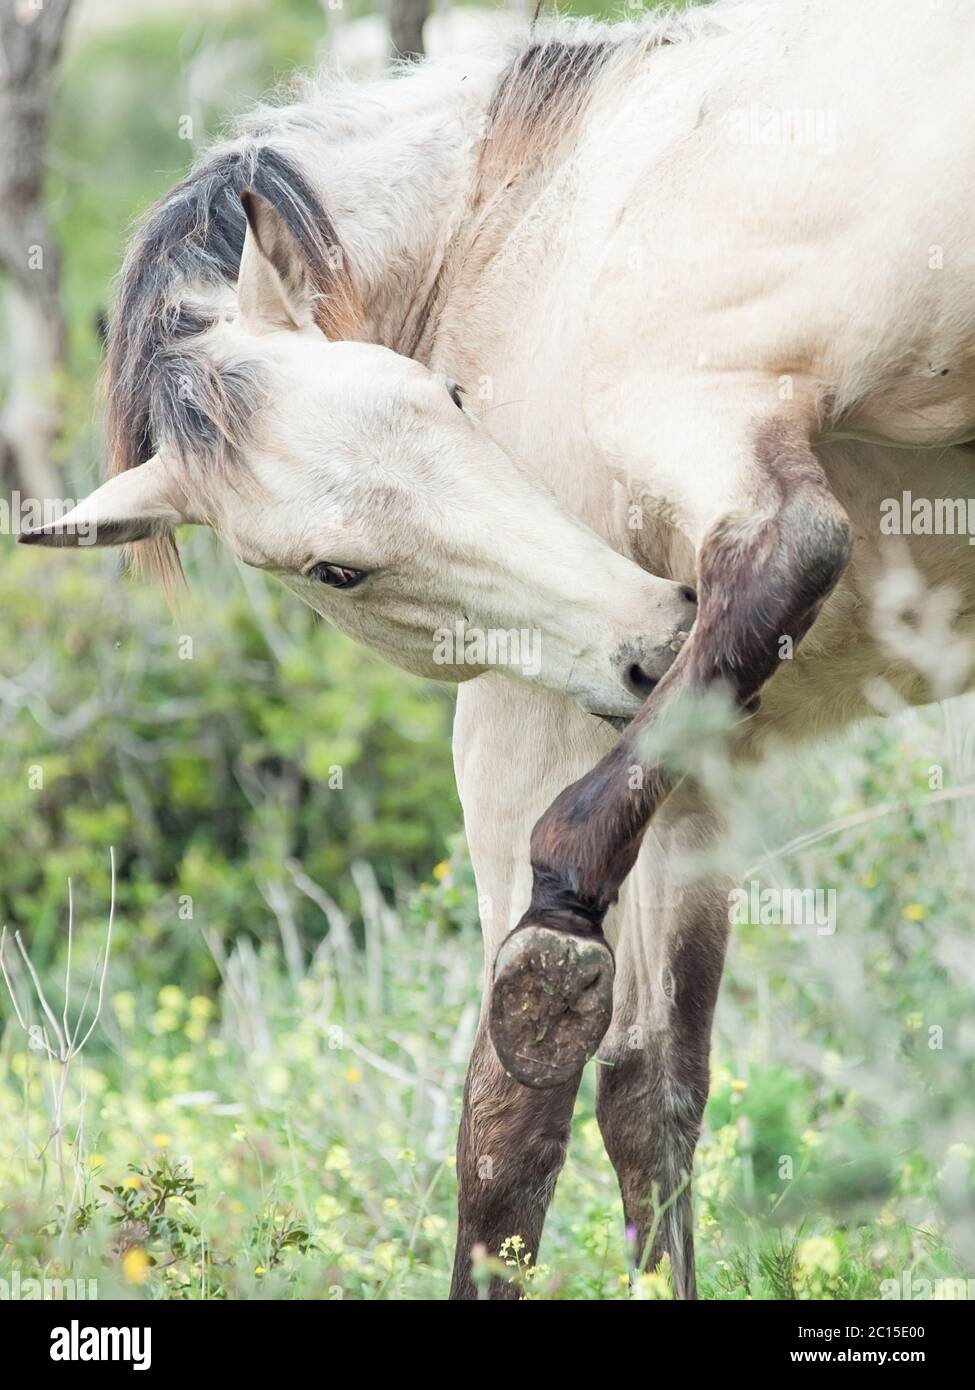 Demi-toilettage jeune cheval sauvage. Israël Banque D'Images